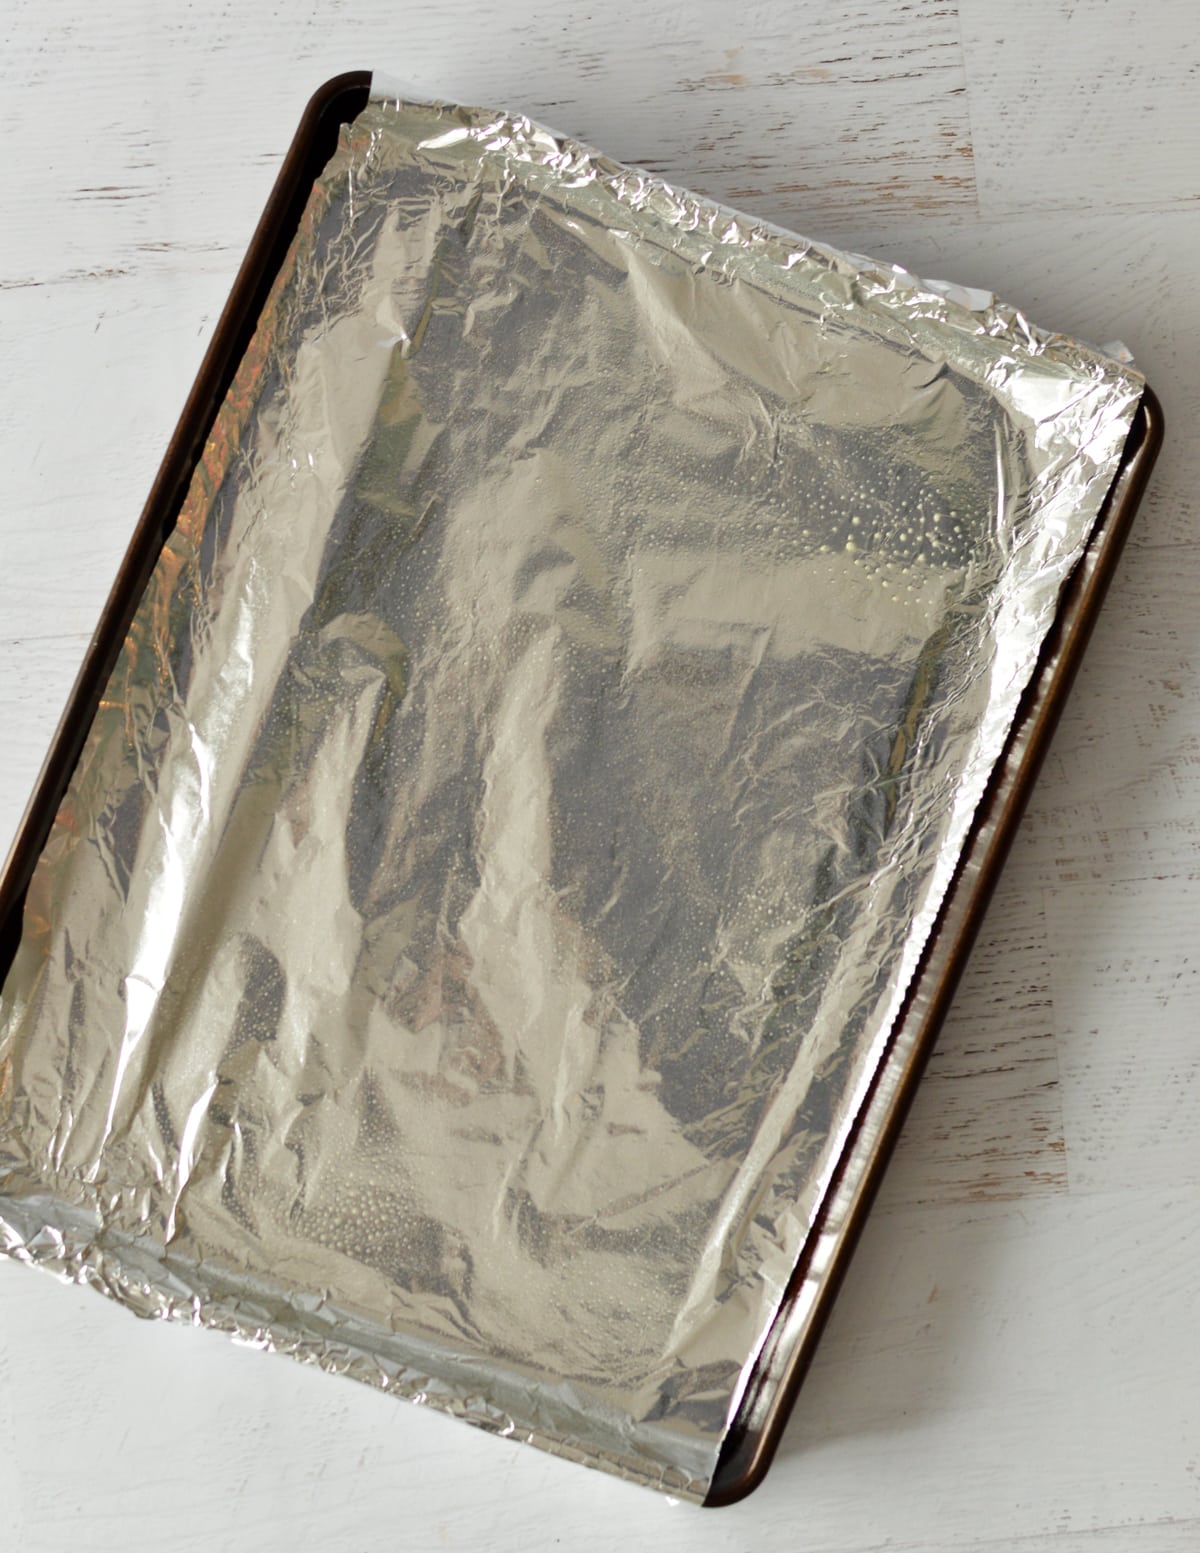 a sheet pan with aluminum foil.